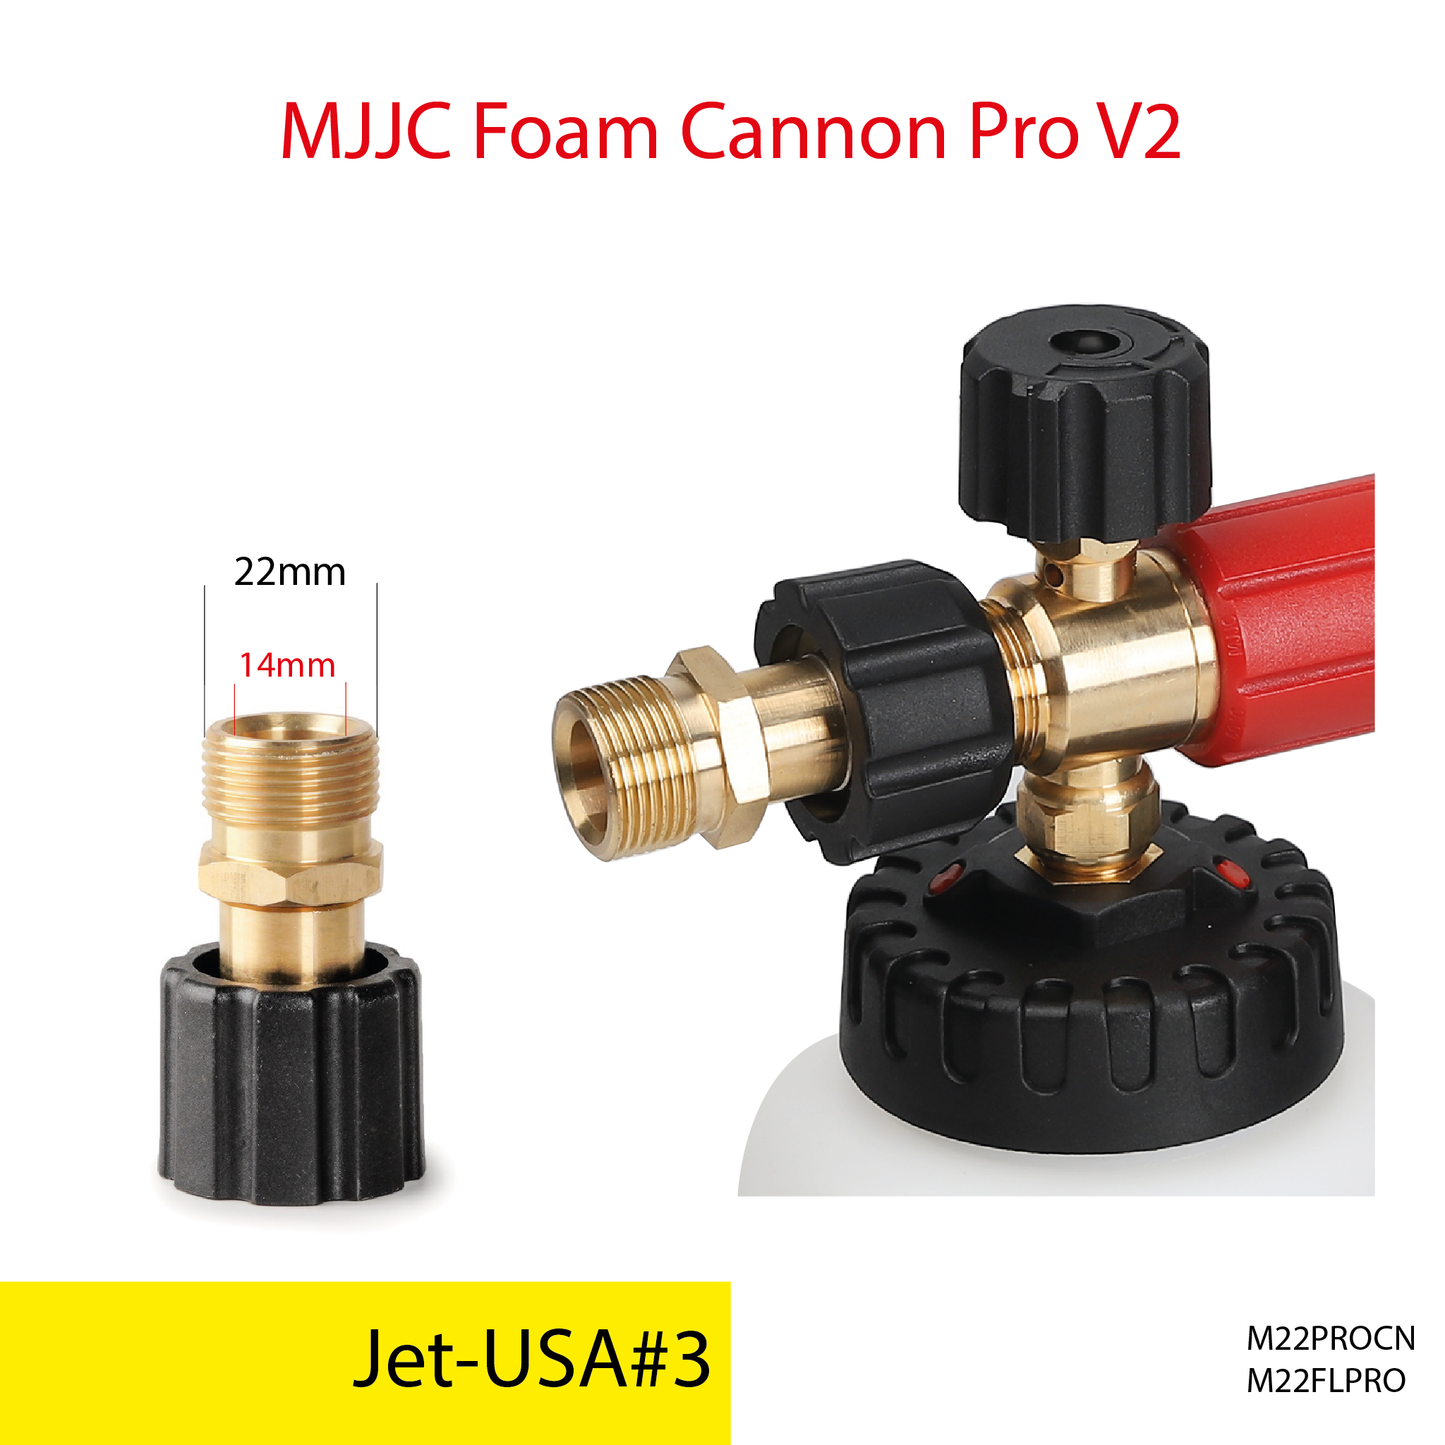 Jet-USA pressure washer - MJJC Foam Cannon Pro V2 (Pressure Washer Snow Foam Lance Gun)